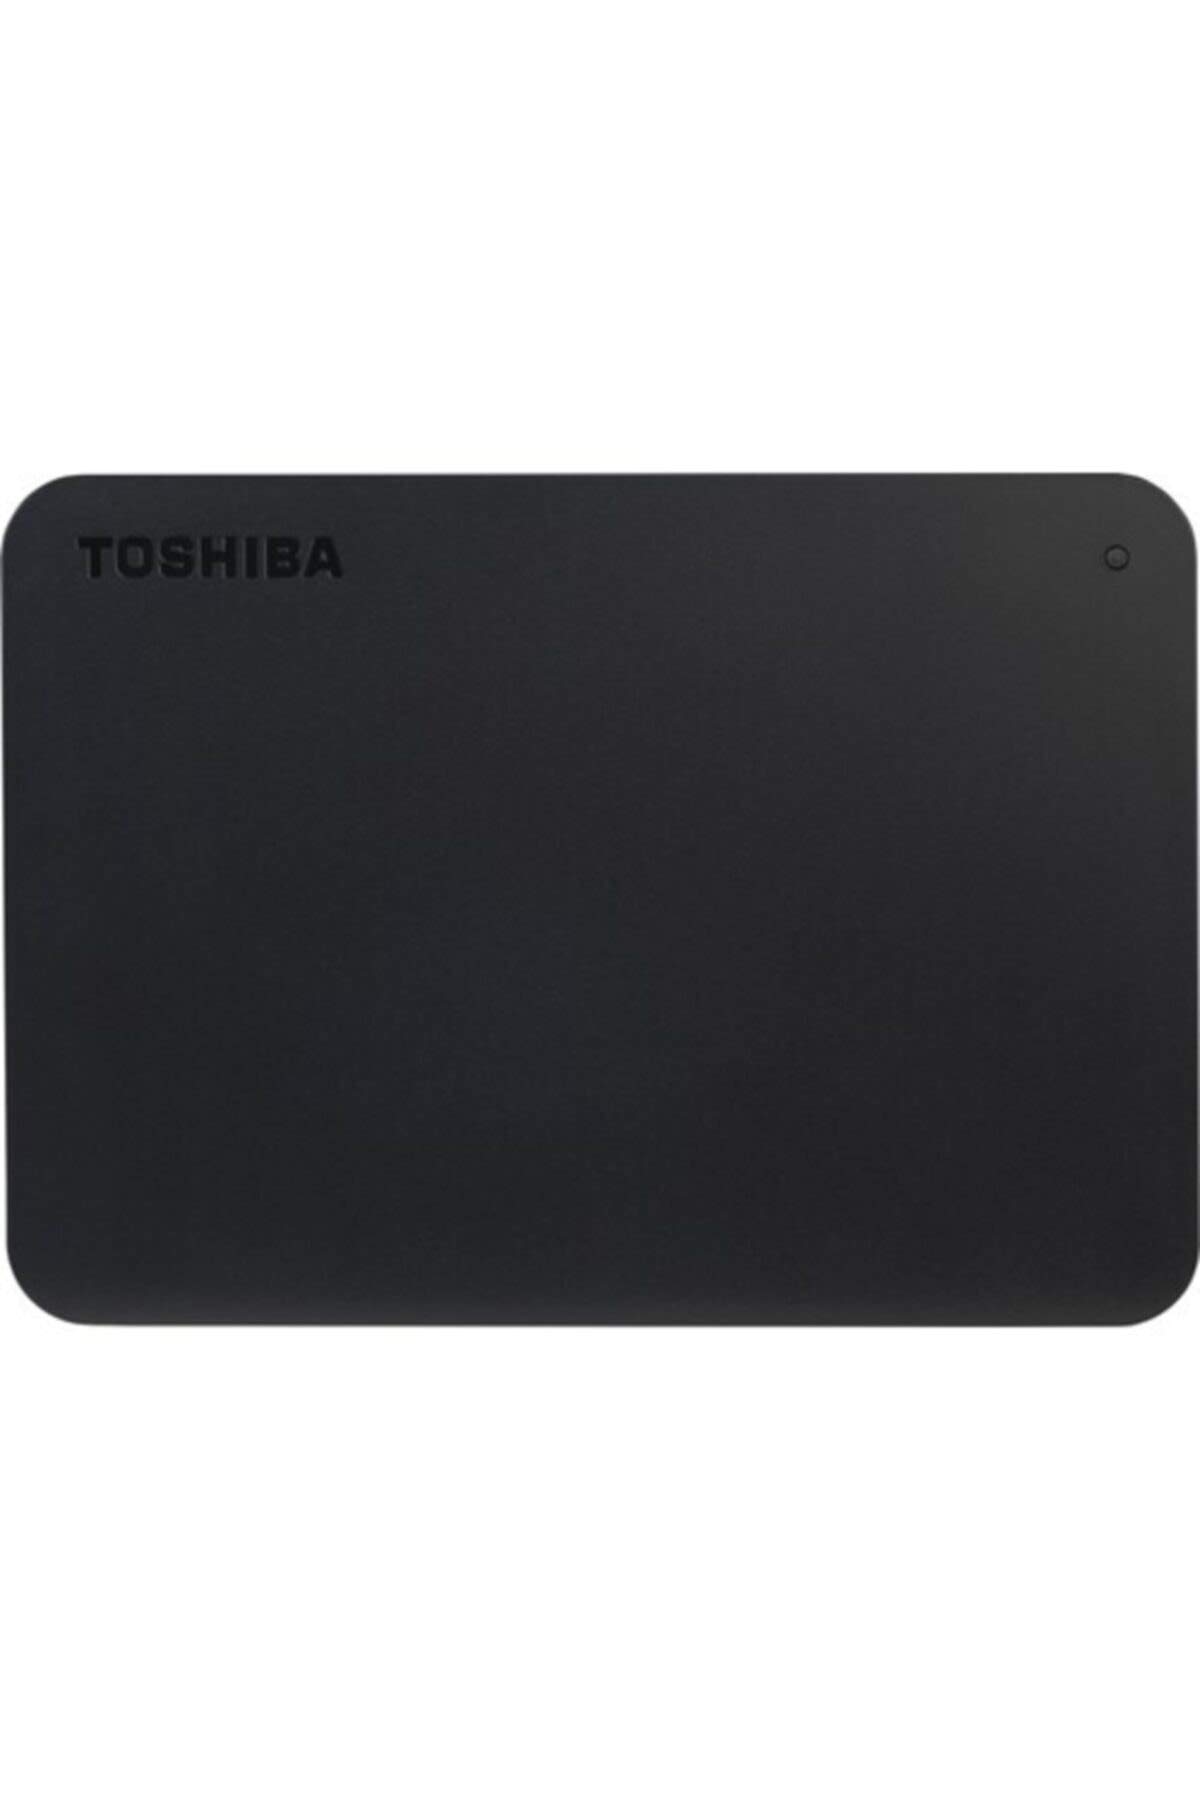 Toshiba 1TB Canvio Basics Portable External Hard Drive,USB 3.0 Gen 1, Black (HDTB410EK3AA), Mechanische Festplatte